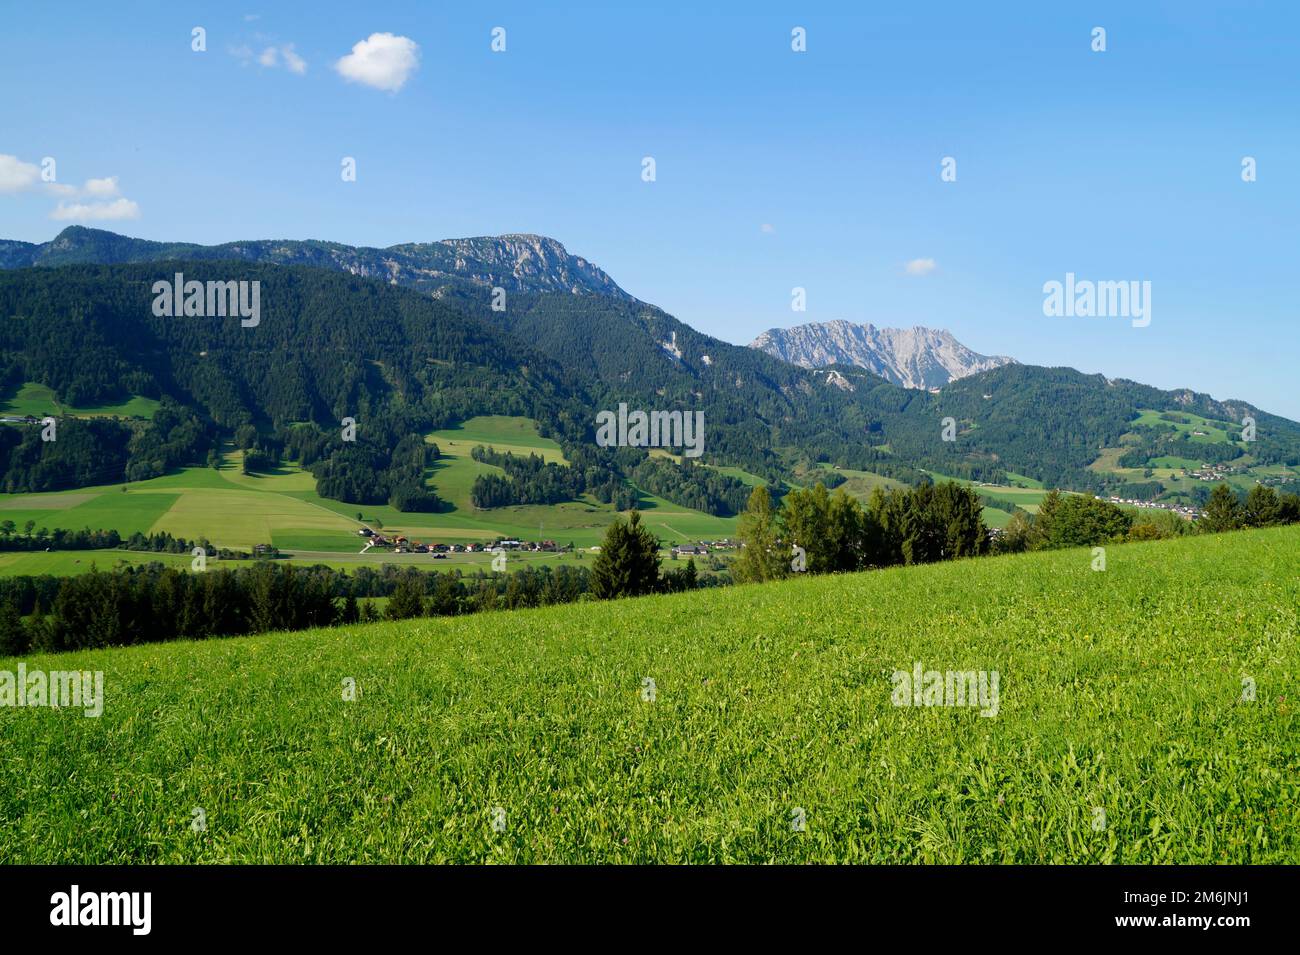 Un bel villaggio alpino nella verde valle alpina delle Alpi austriache della regione di Schladming-Dachstein (Steiermark o Stiria, Austria) Foto Stock